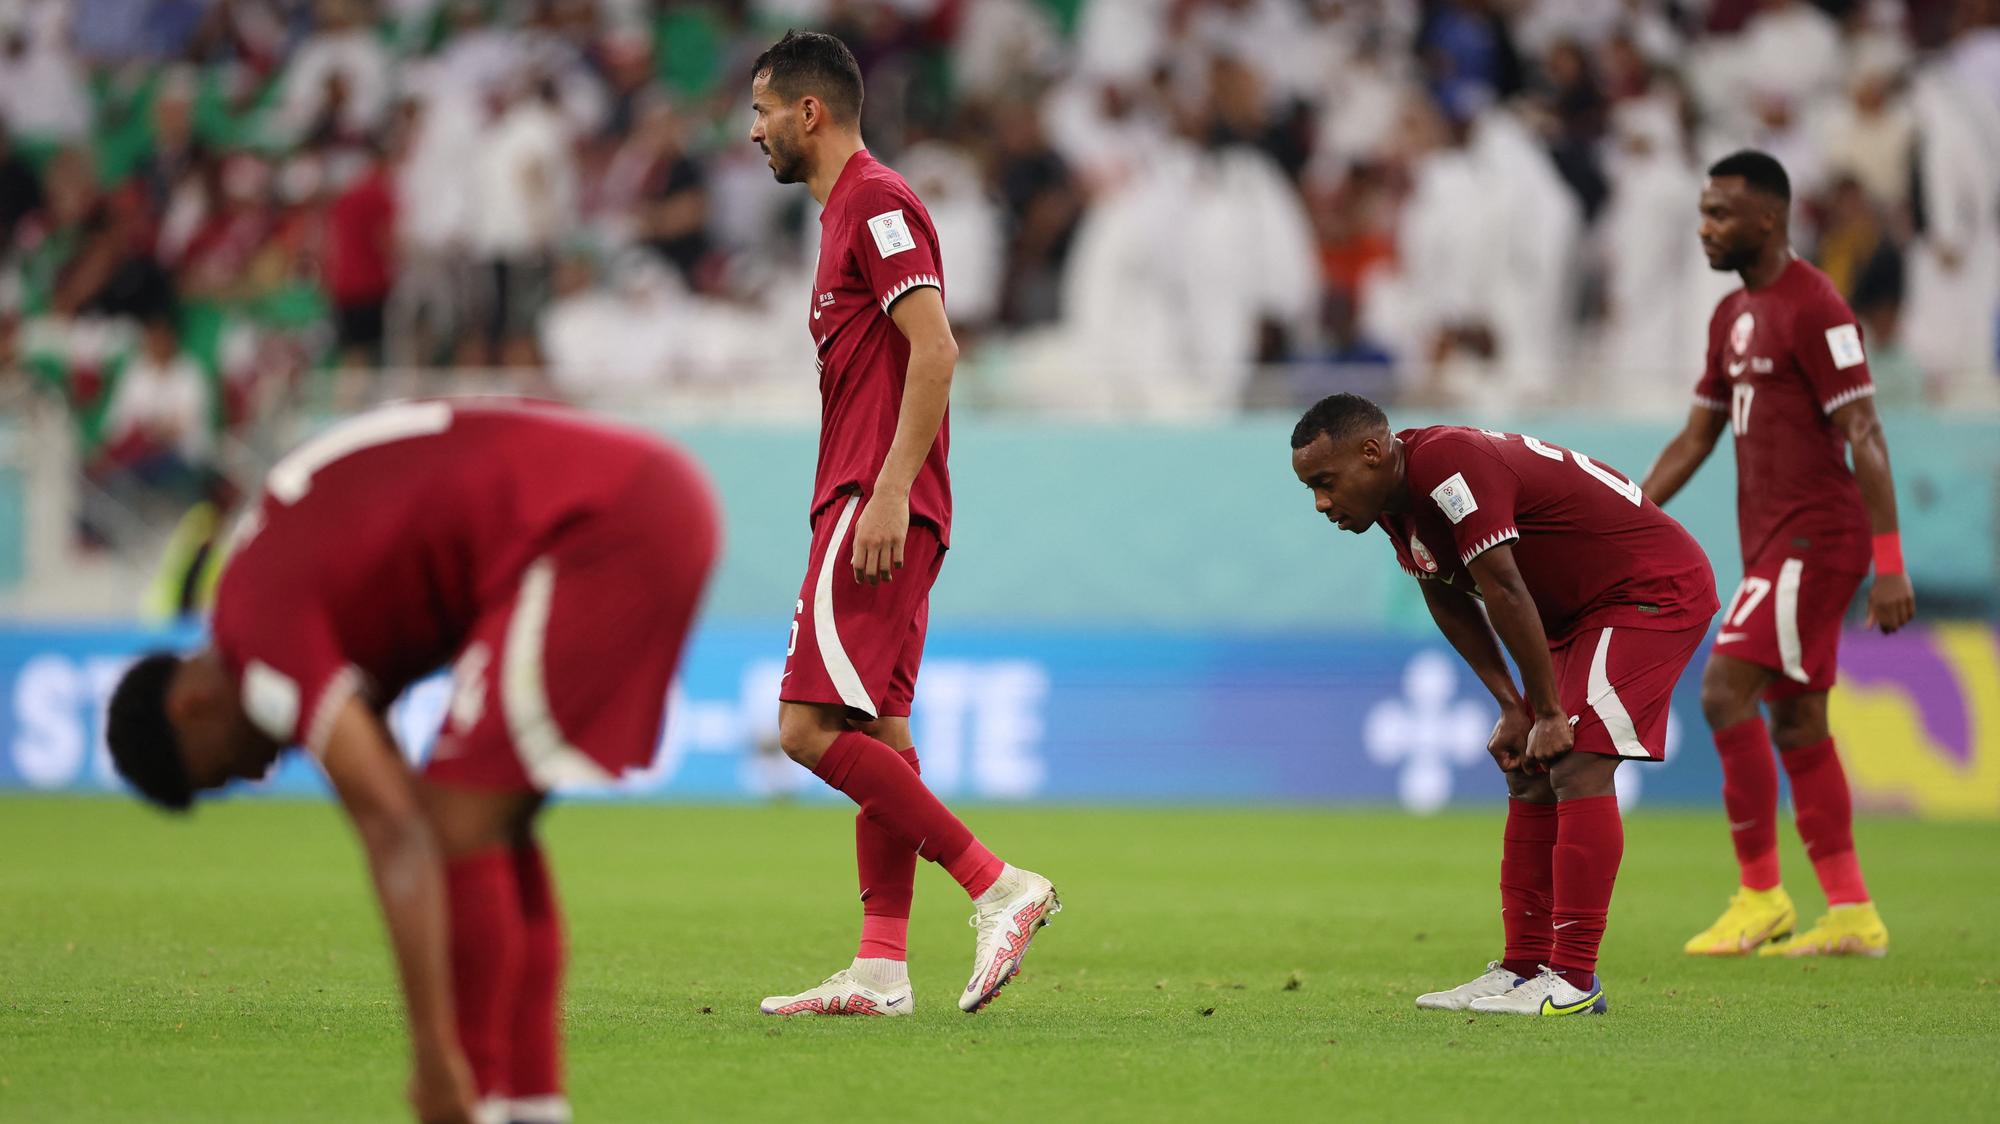 MS vo futbale 2022: Katar prekonal negatívny rekord hostiteľských krajín,  Irán šokoval Wales